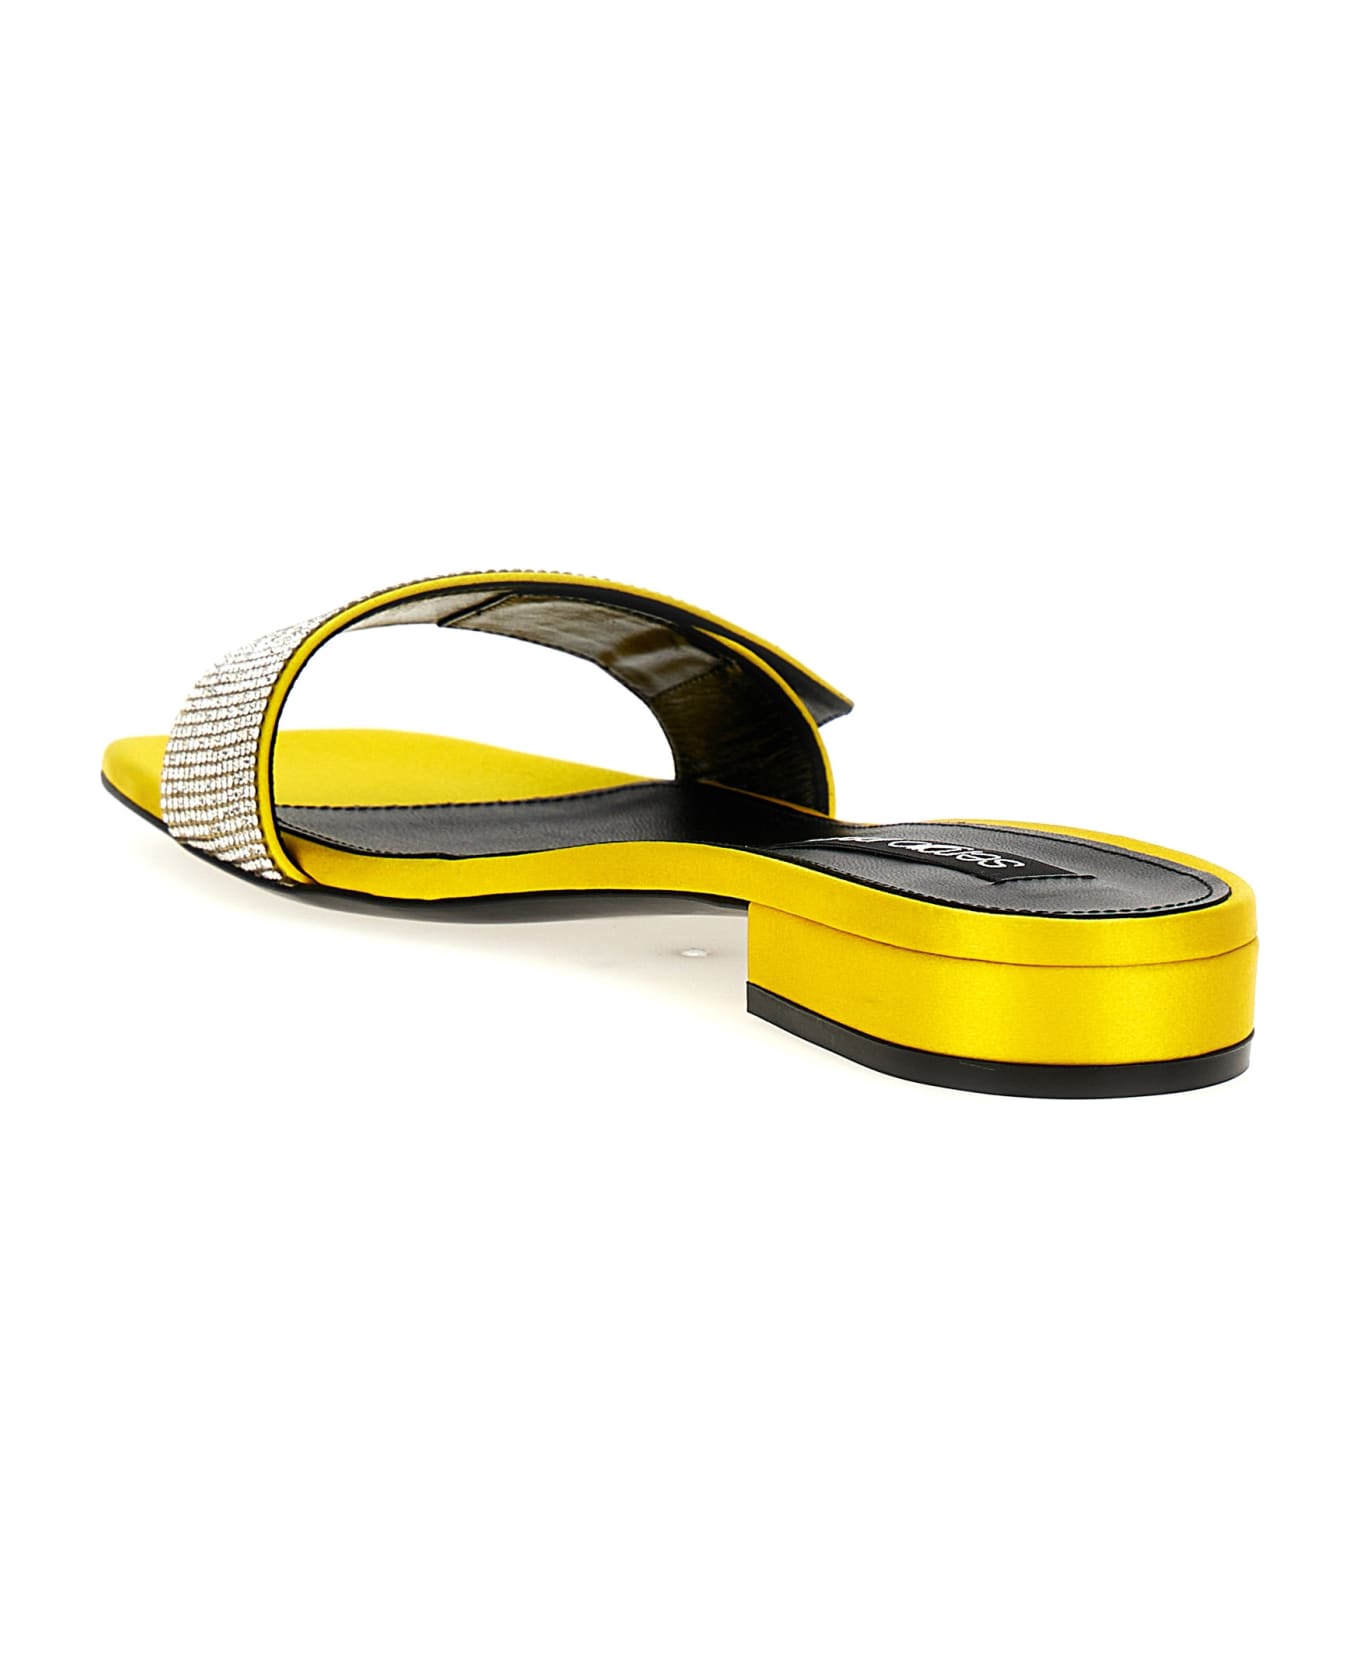 Sergio Rossi 'paris' Sandals - Yellow